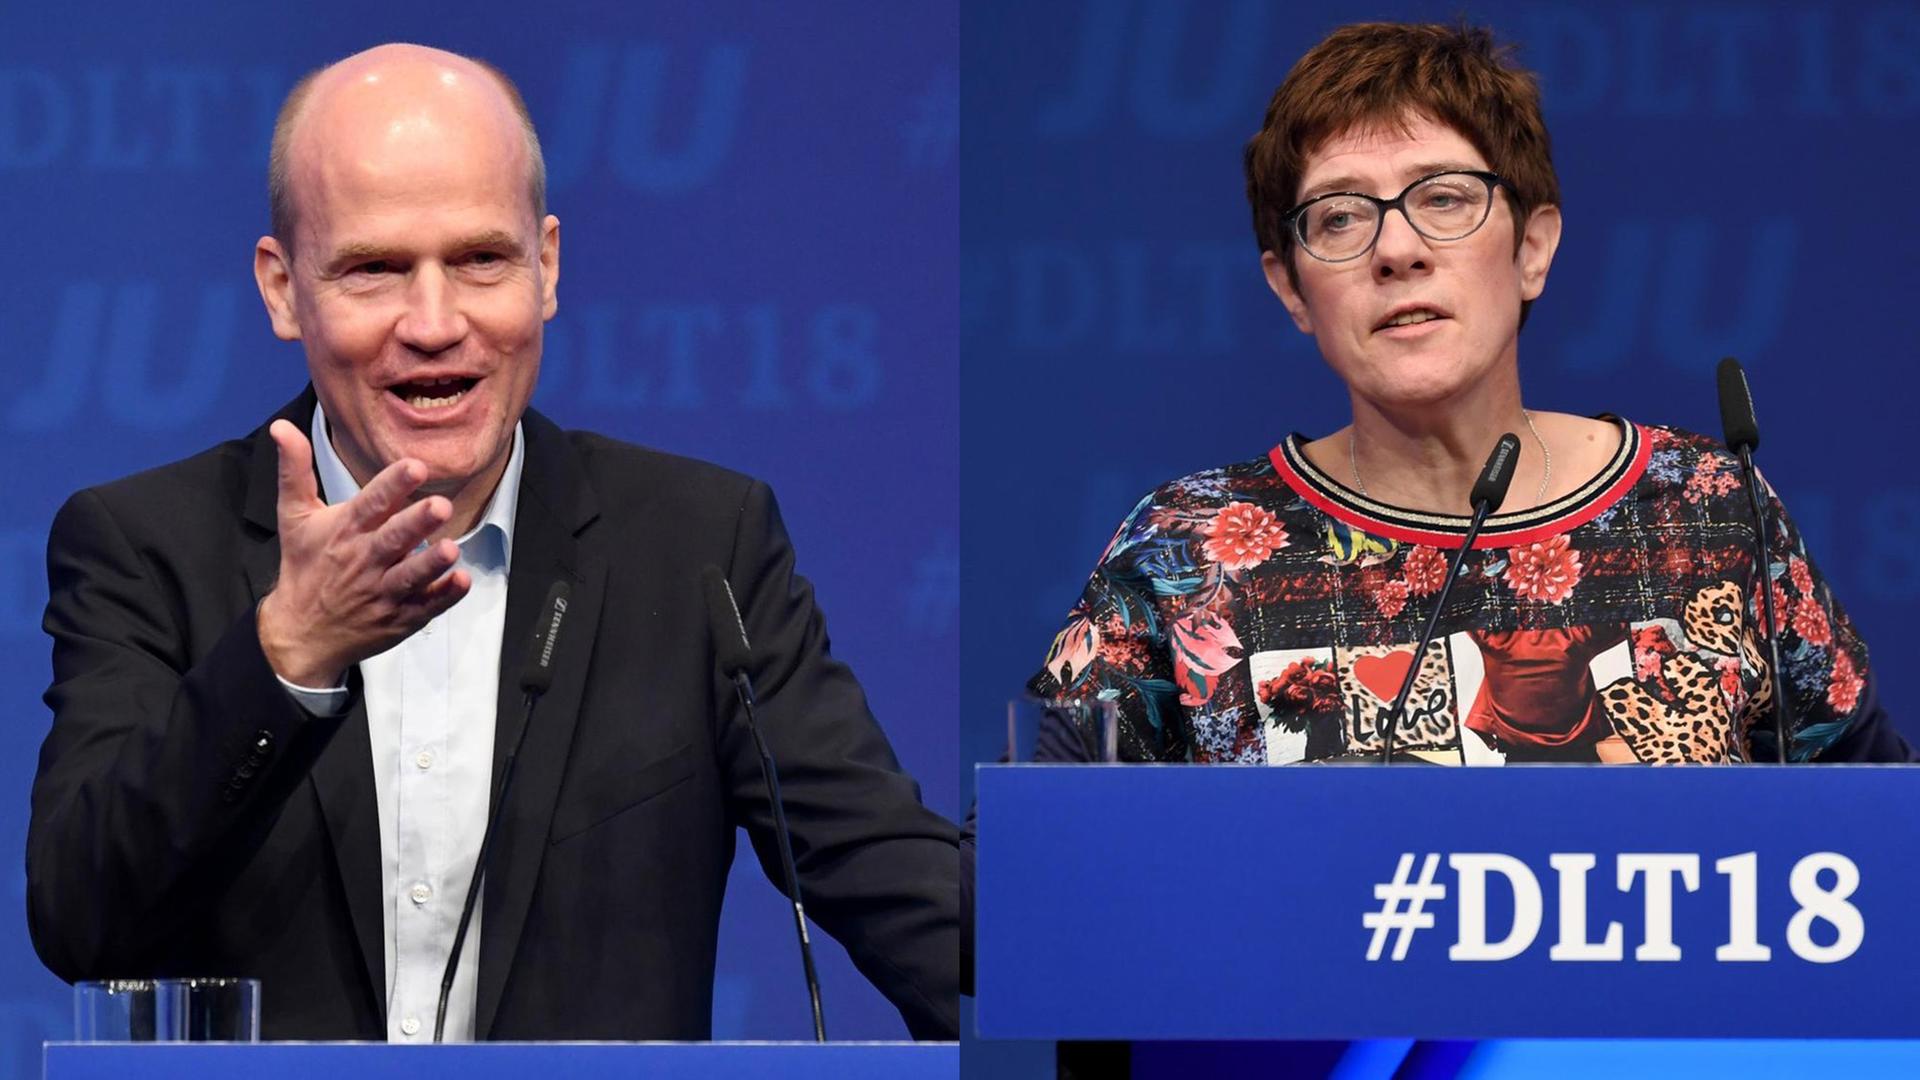 Unions-Fraktionschef Ralph Brinkhaus und CDU-Generalsekretärin Annegret Kramp-Karrenbauer